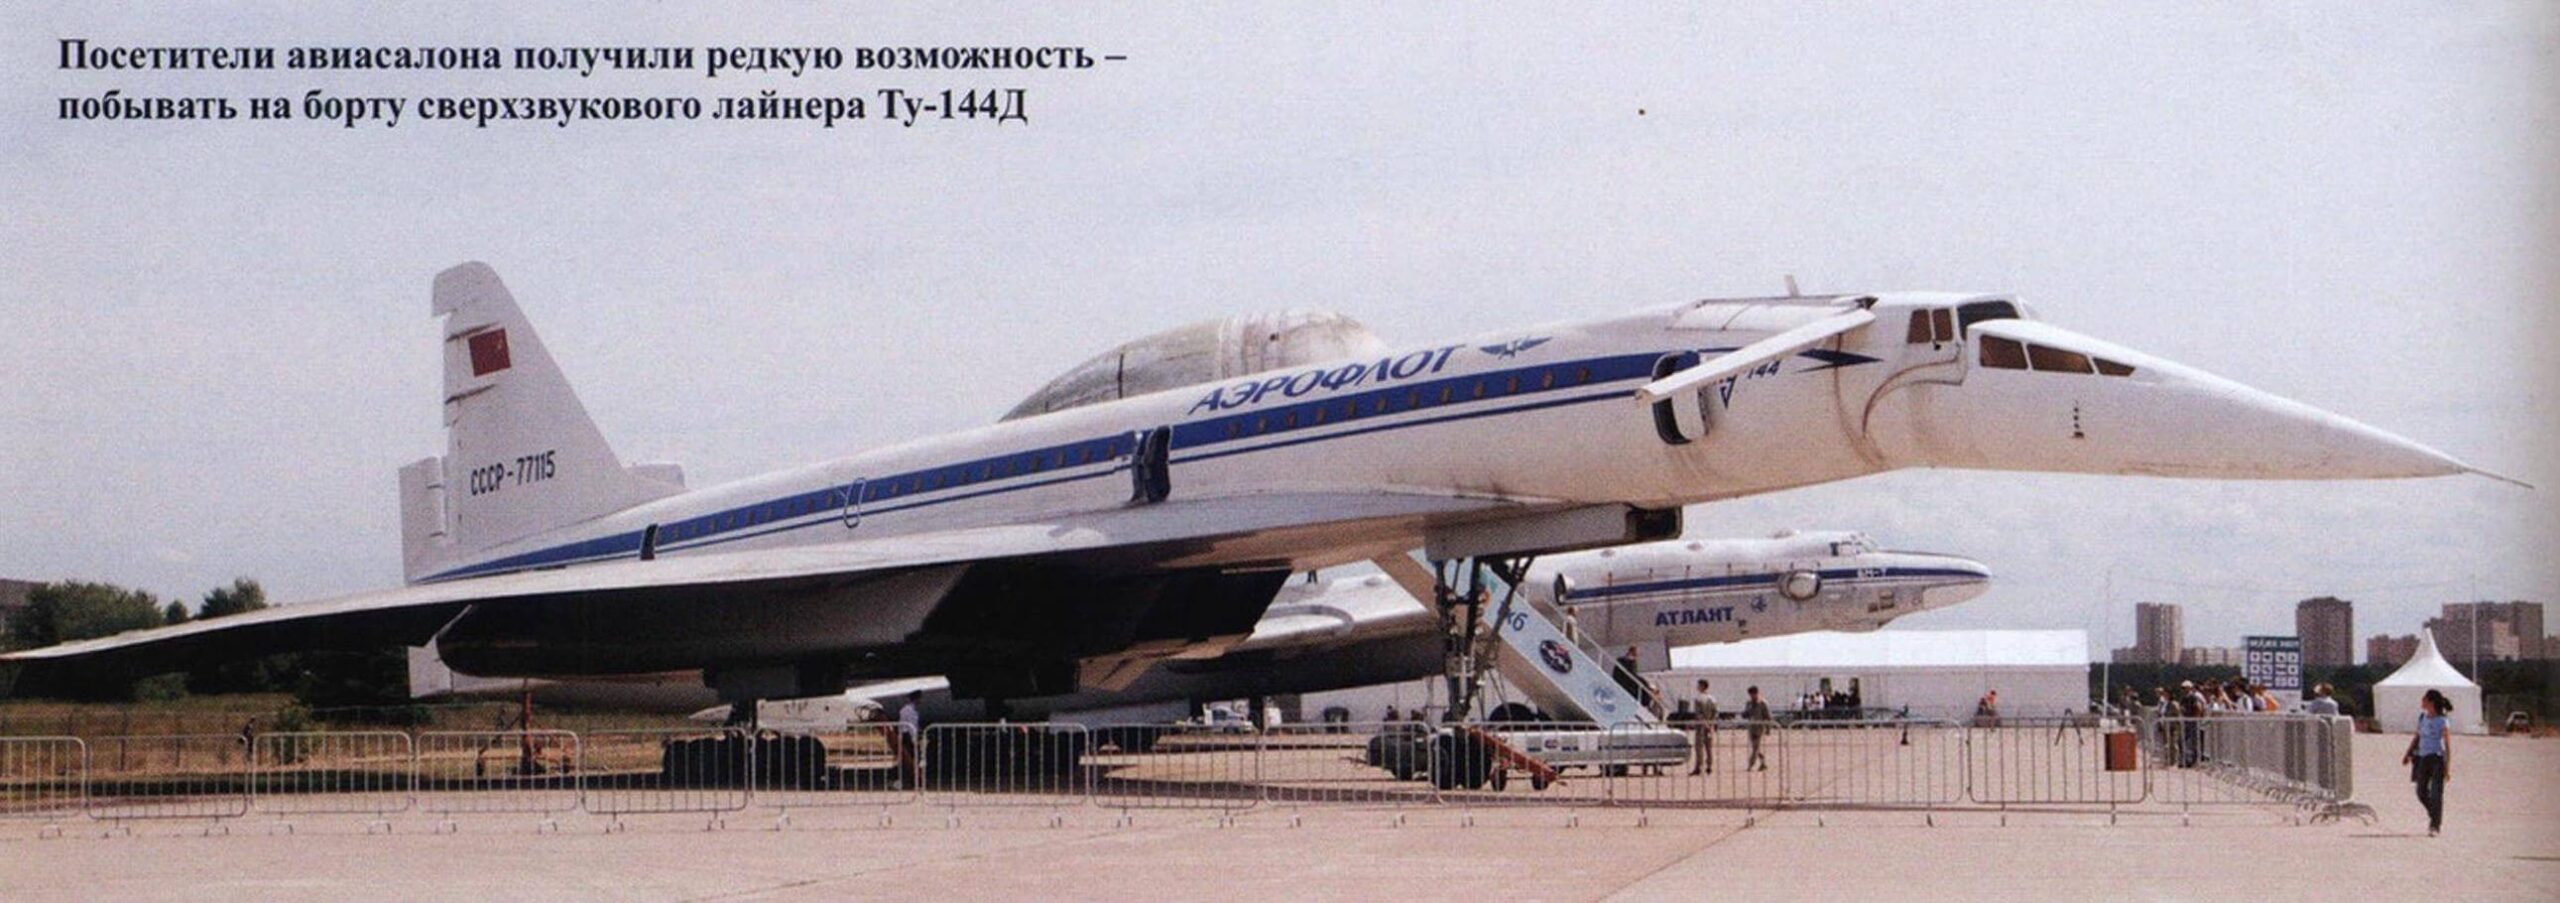 Посетители авиасалона получили редкую возможность -побывать на борту сверхзвукового лайнера Ту-144Д